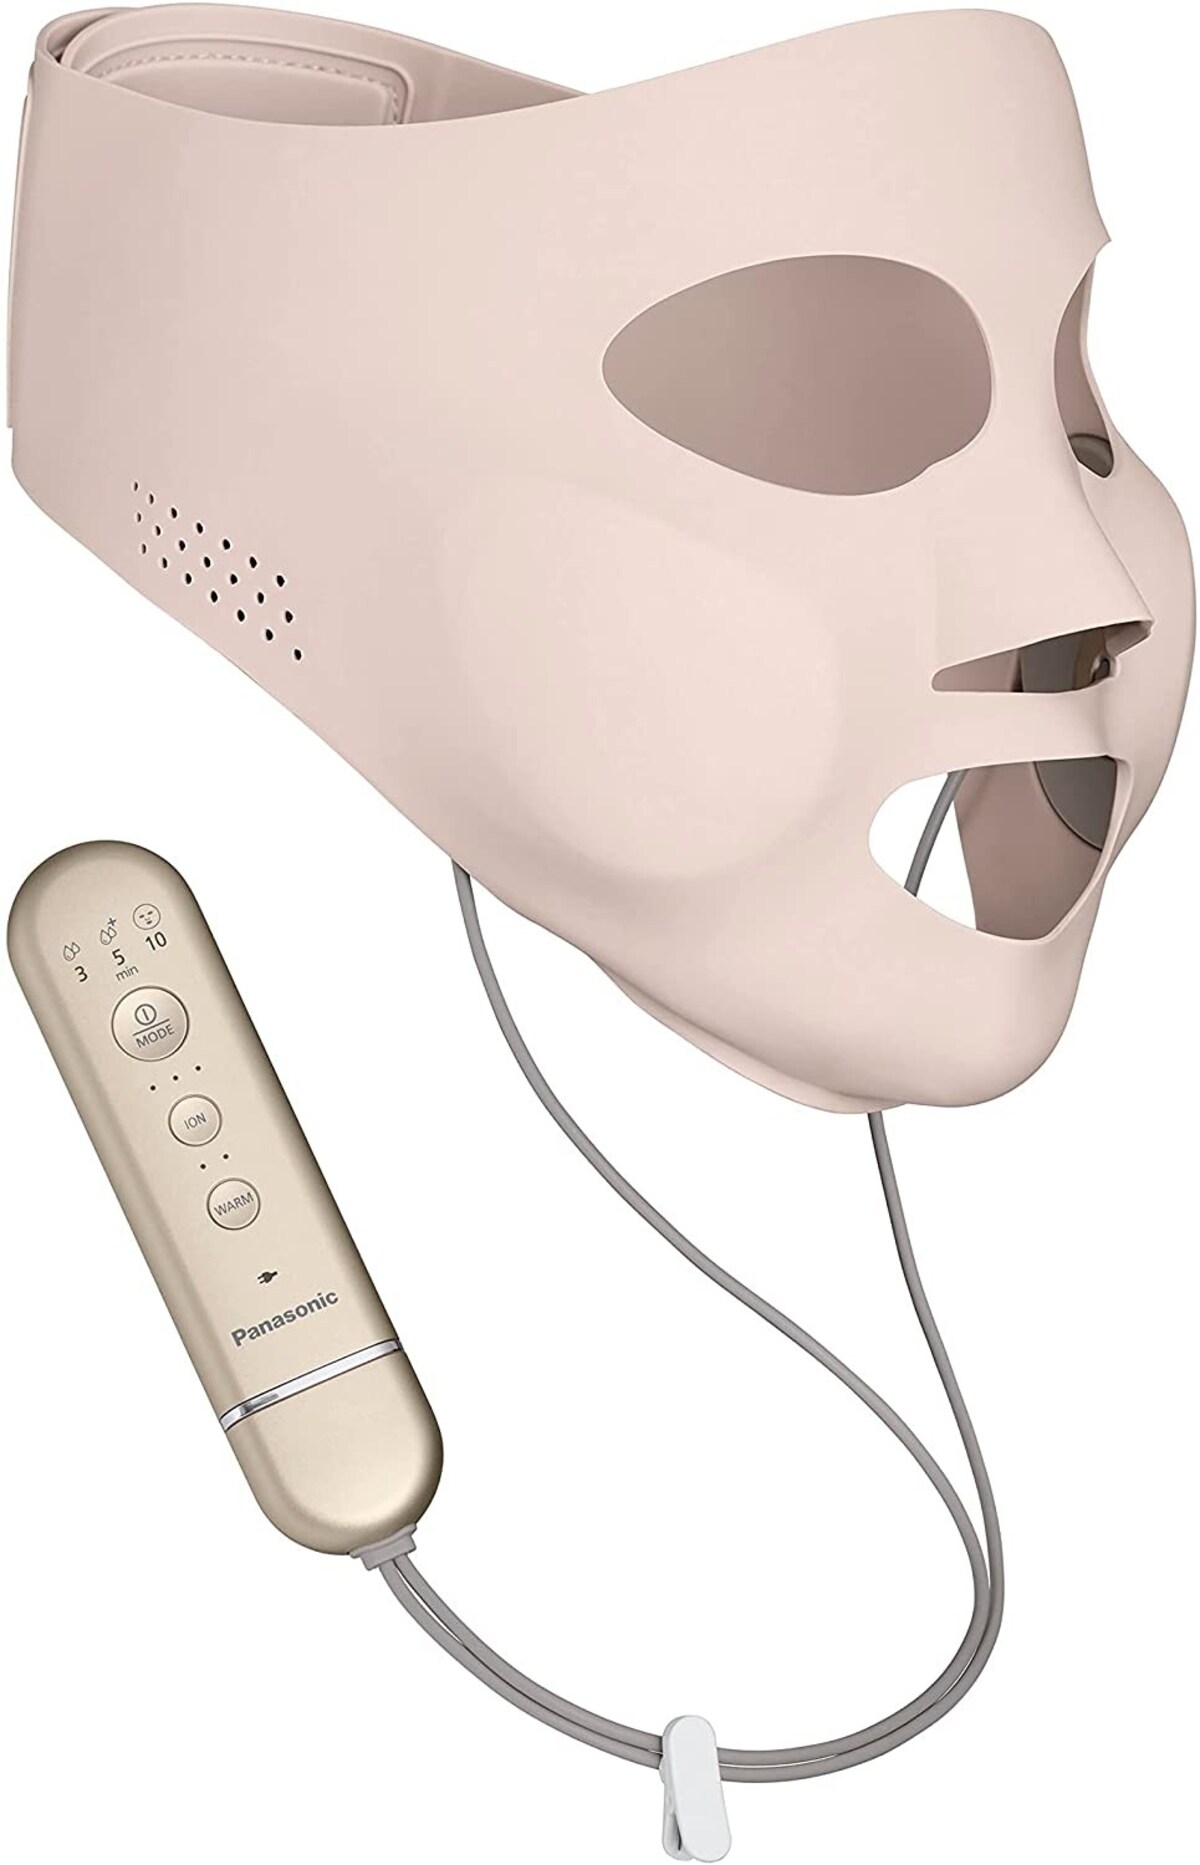 マスク型イオン美顔器